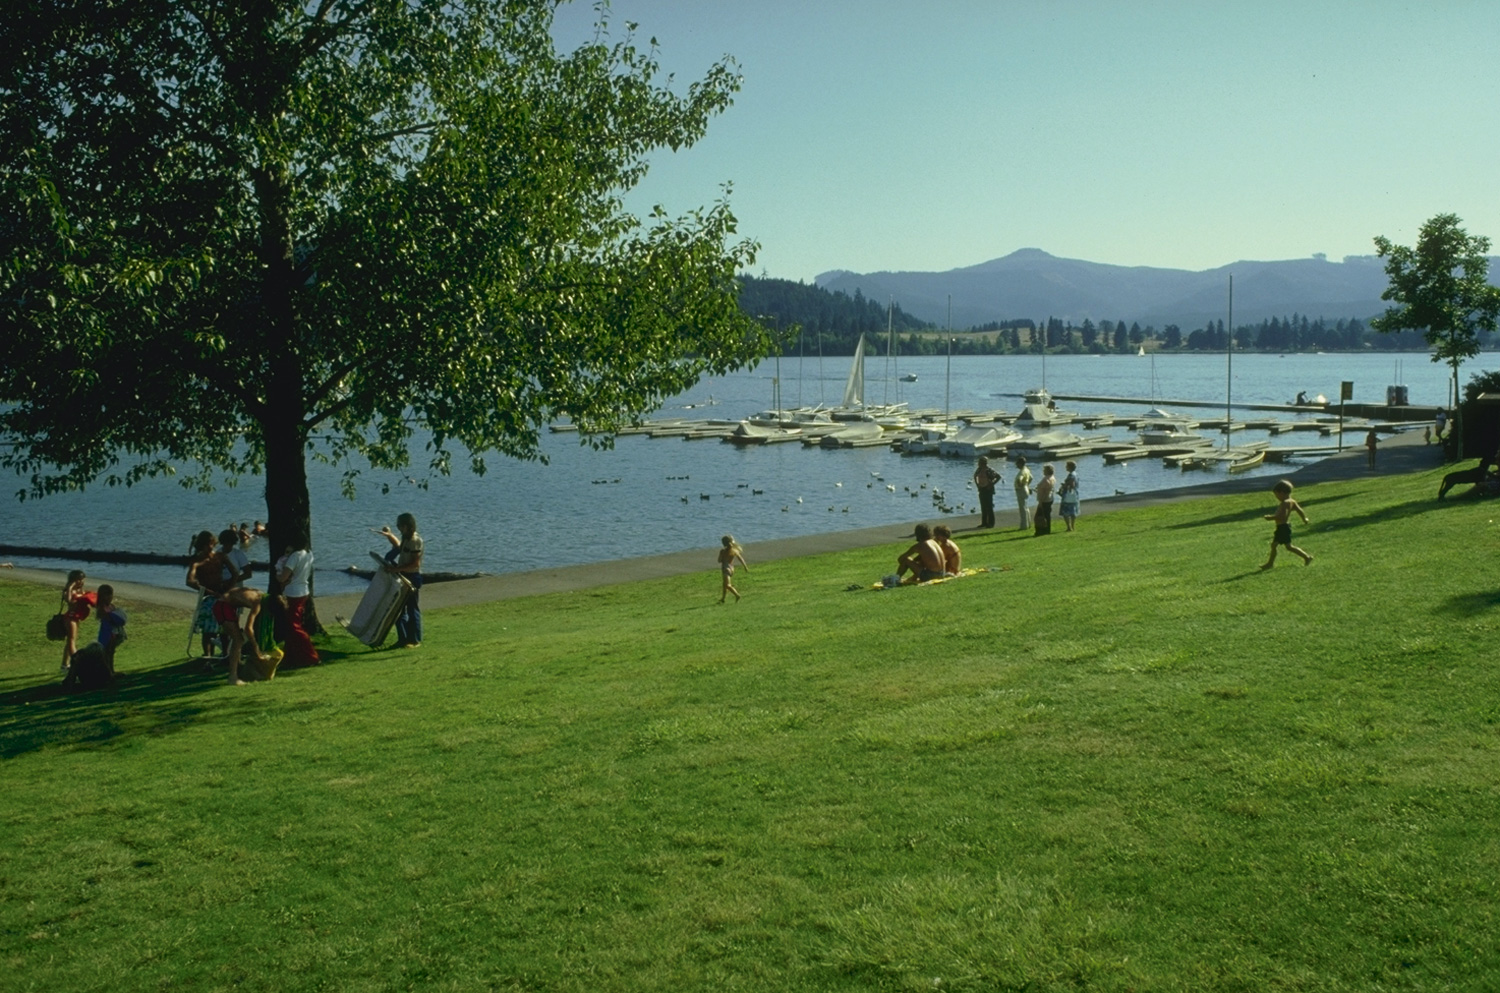 View of lake, shoreline and marina